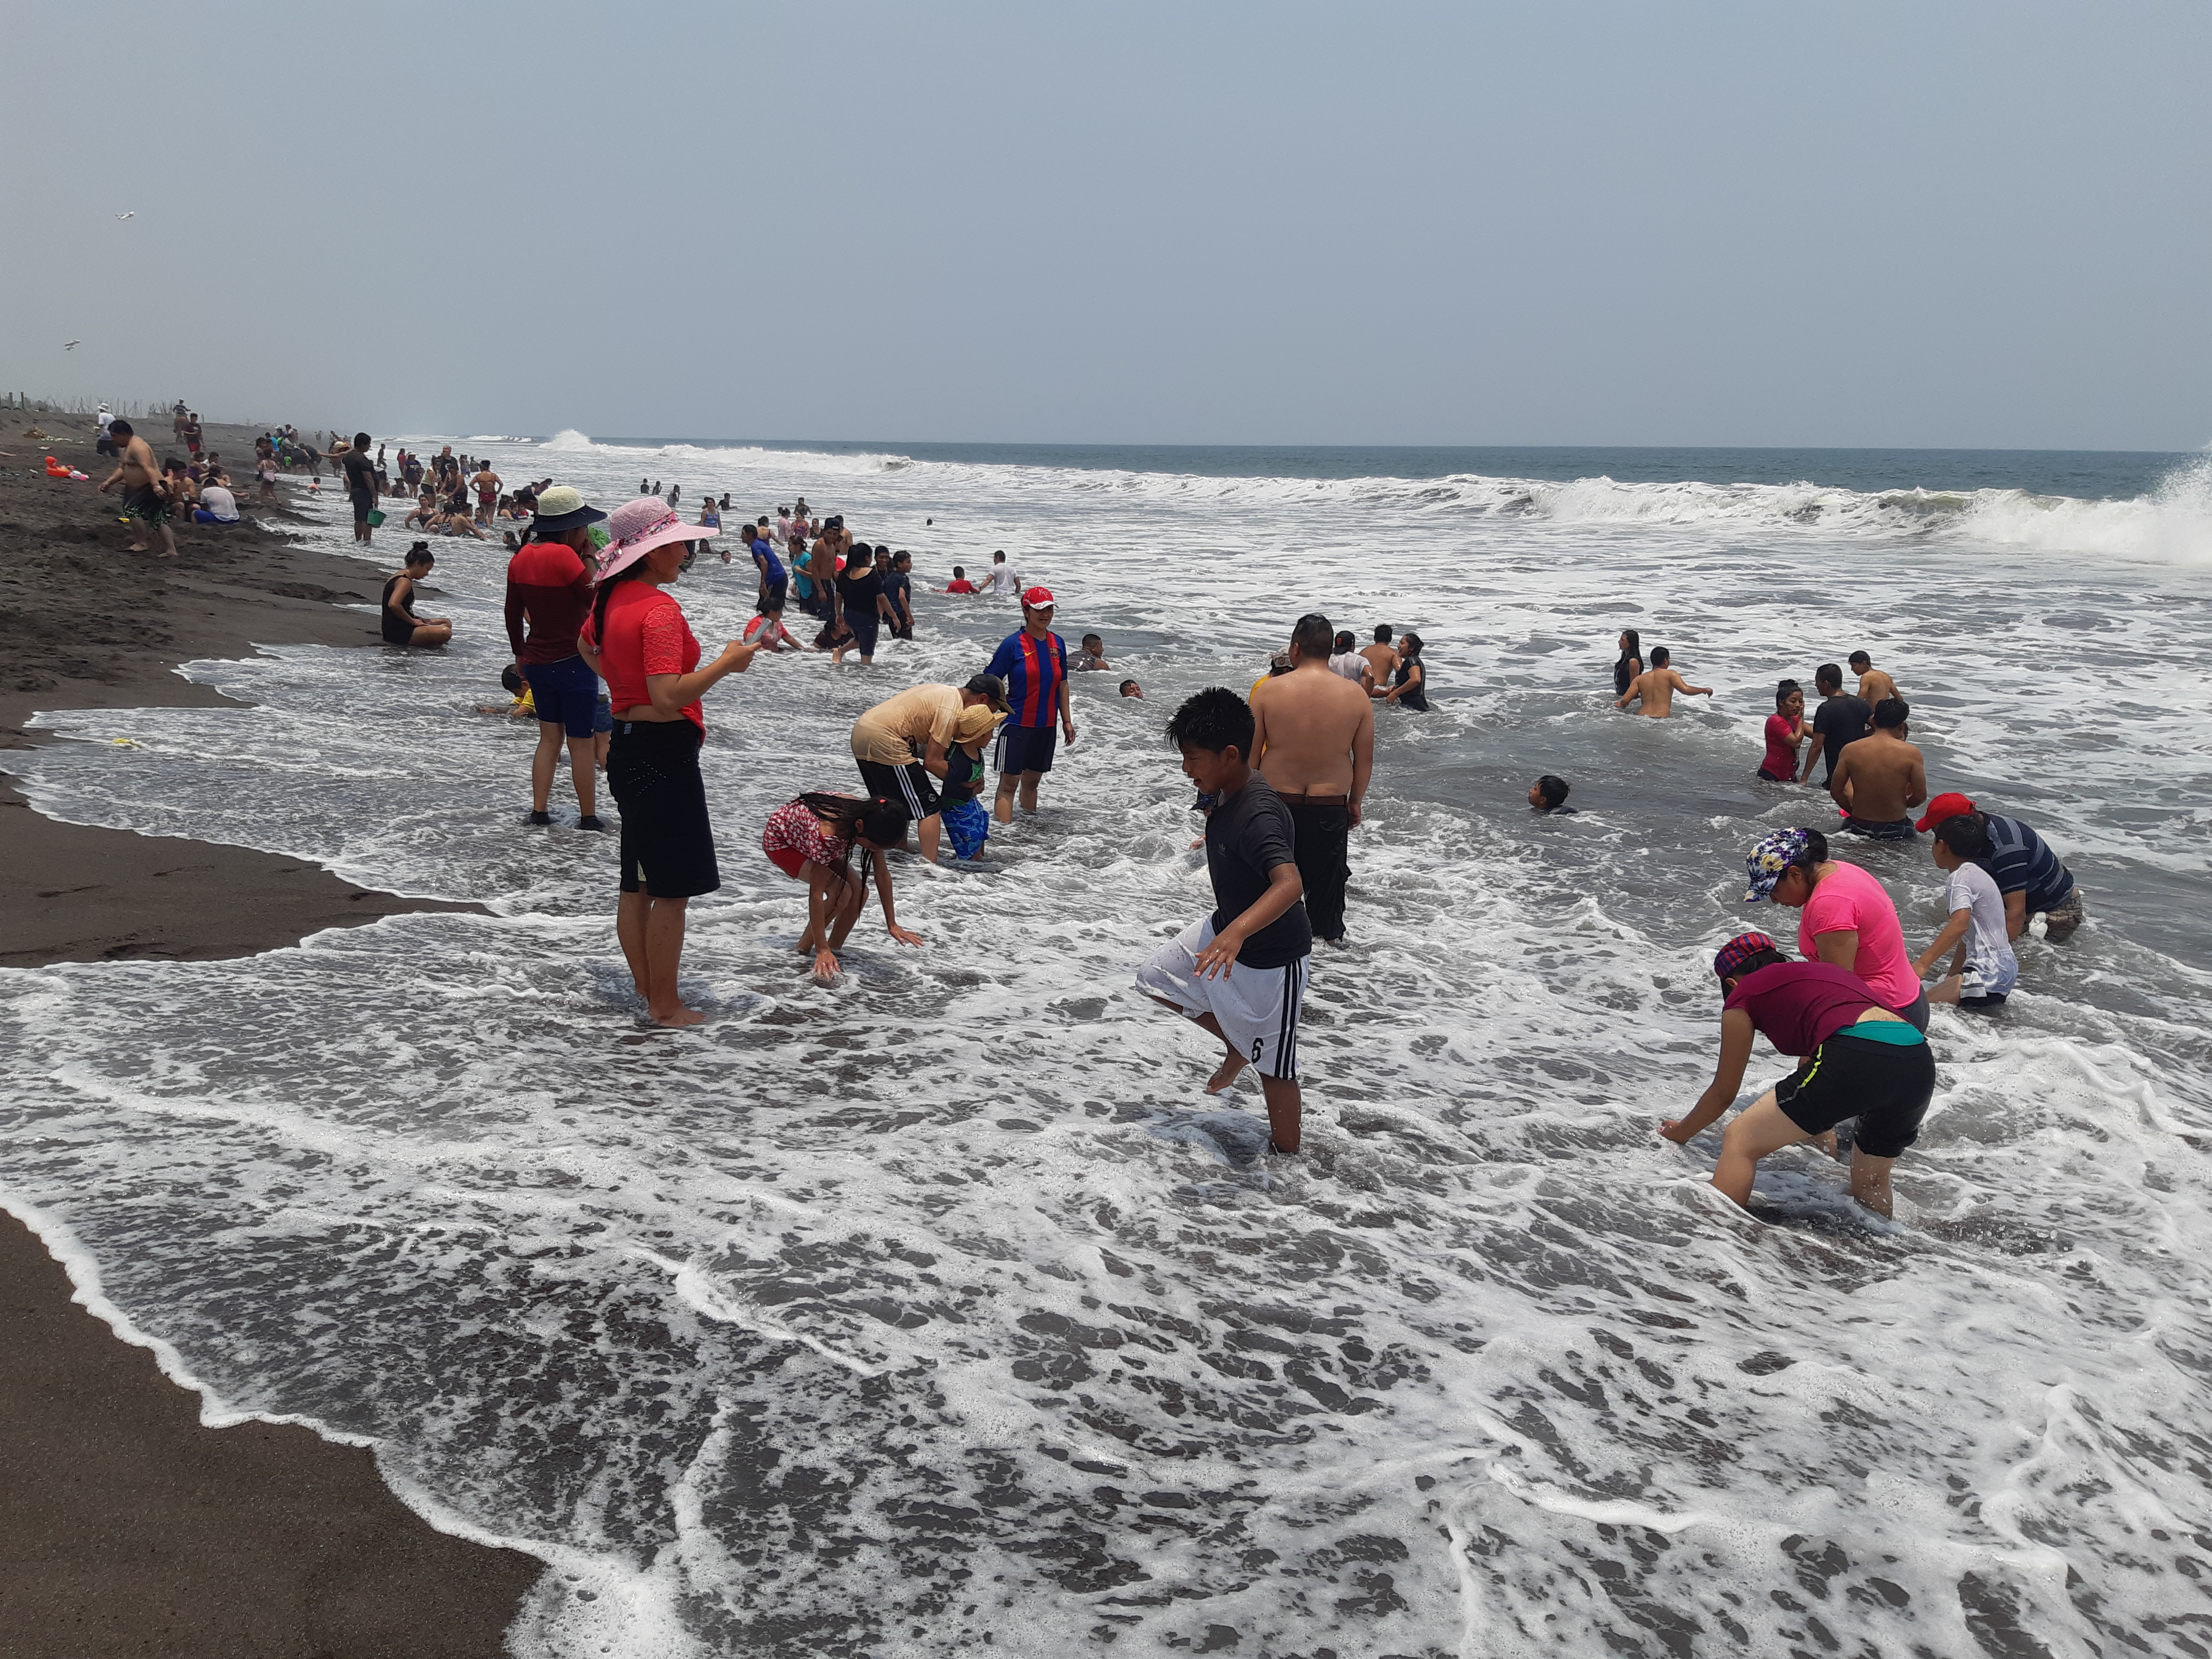 Las playas del pacífico reportaron un incremento de turistas nacionales por el asueto, informó el Inguat. (Foto Prensa Libre: Carlos Enrique Paredes)